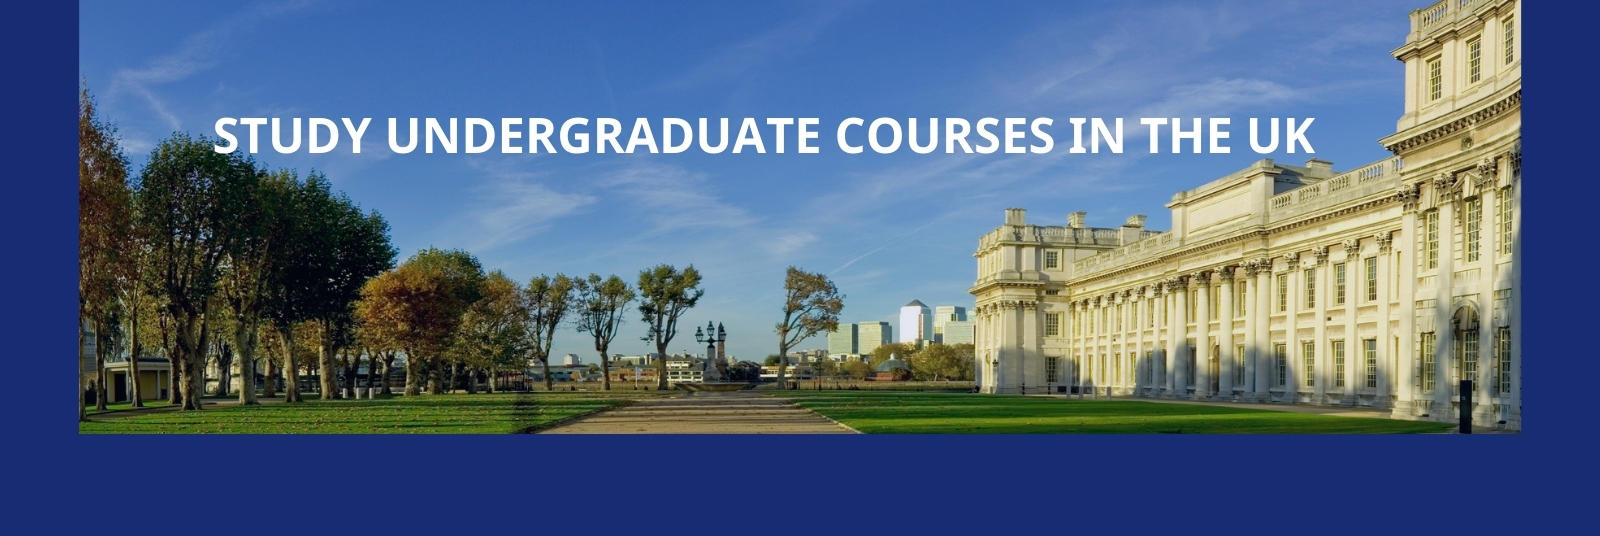 Popular undergraduate courses in the UK